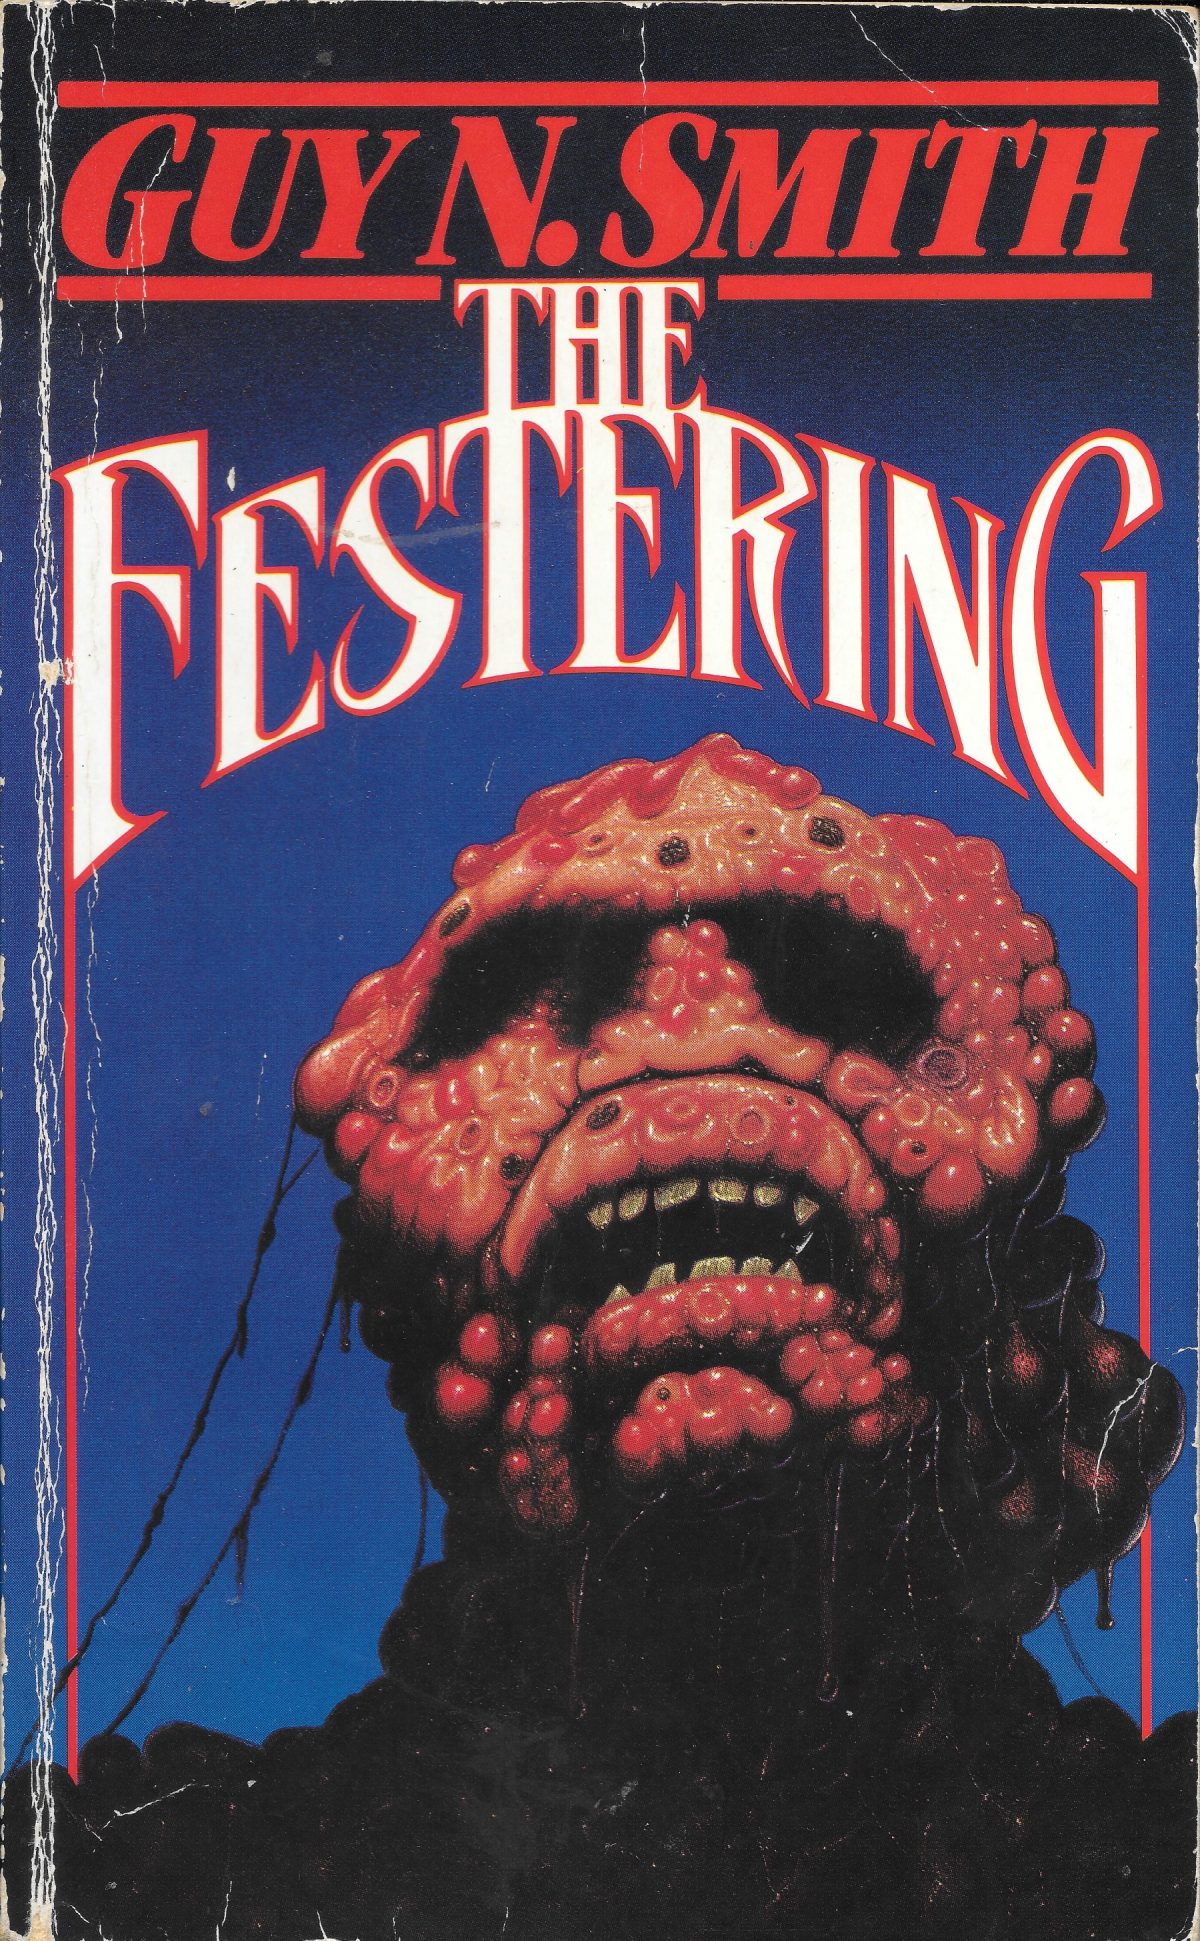 Guy N Smith, horror fictions, horror, books, The Festering